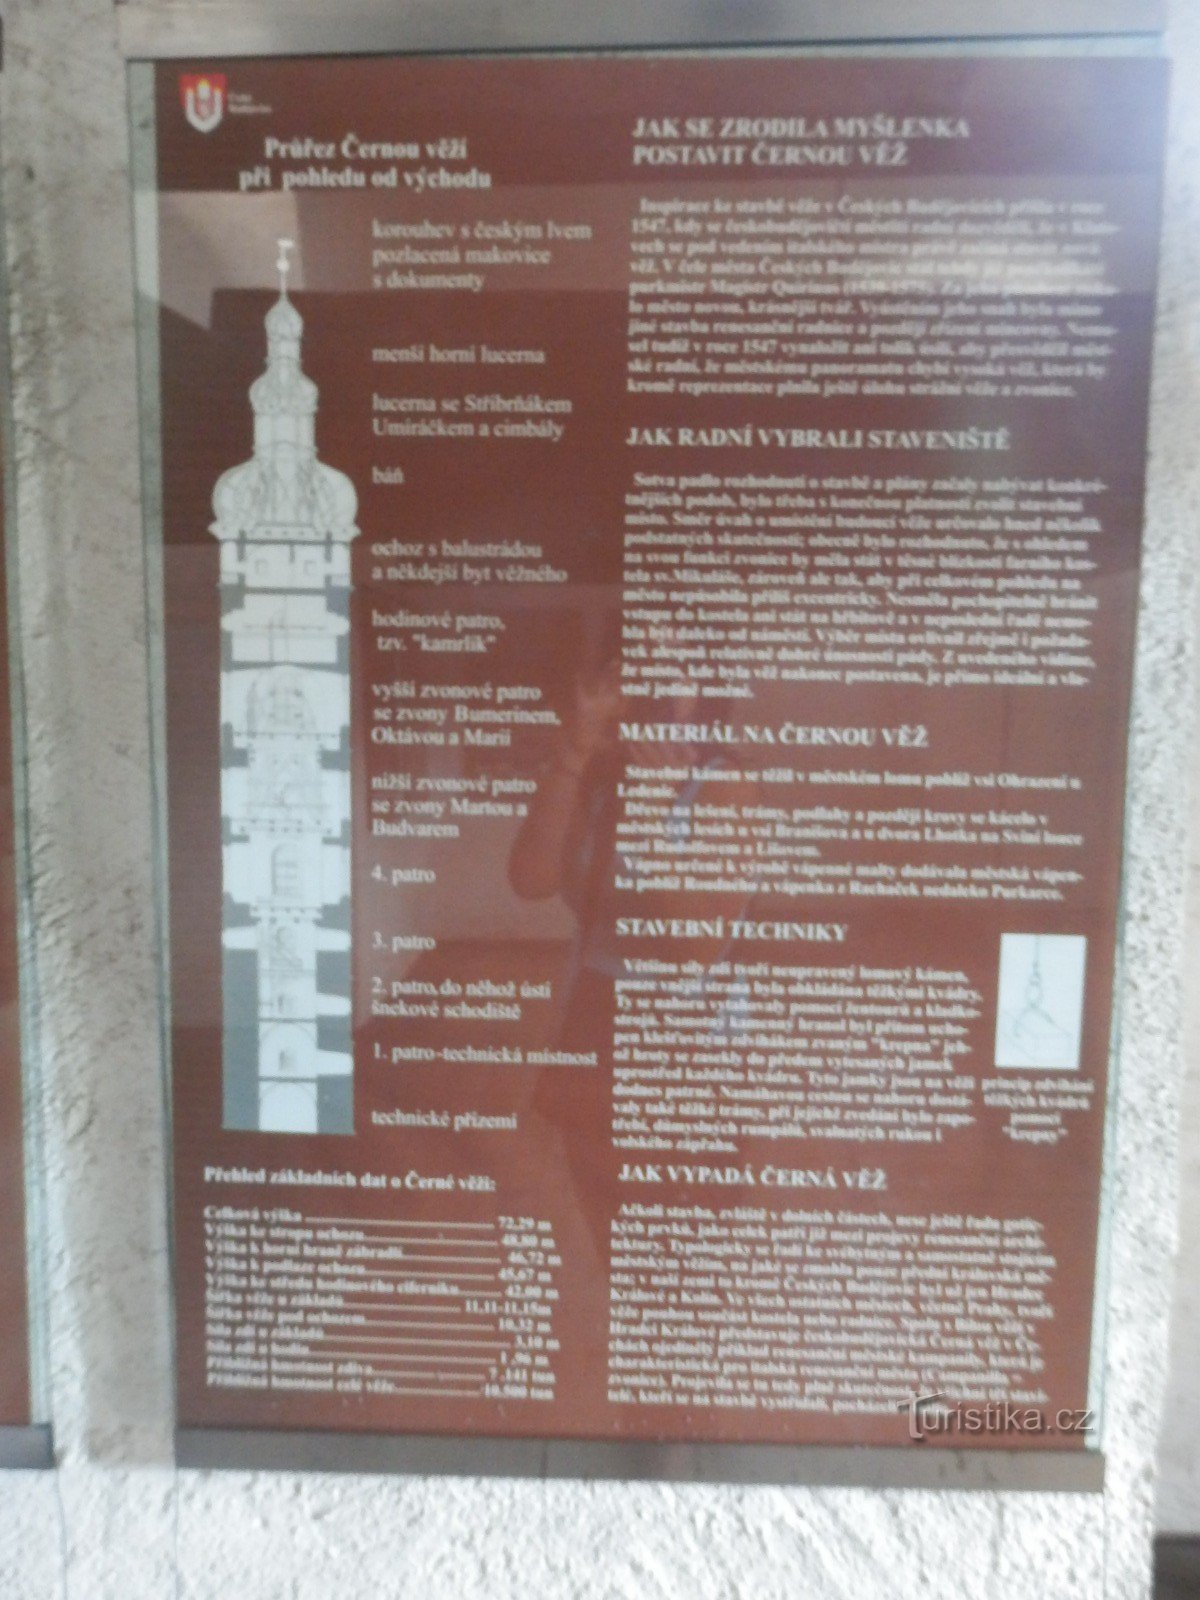 Turnul Negru - České Budějovice